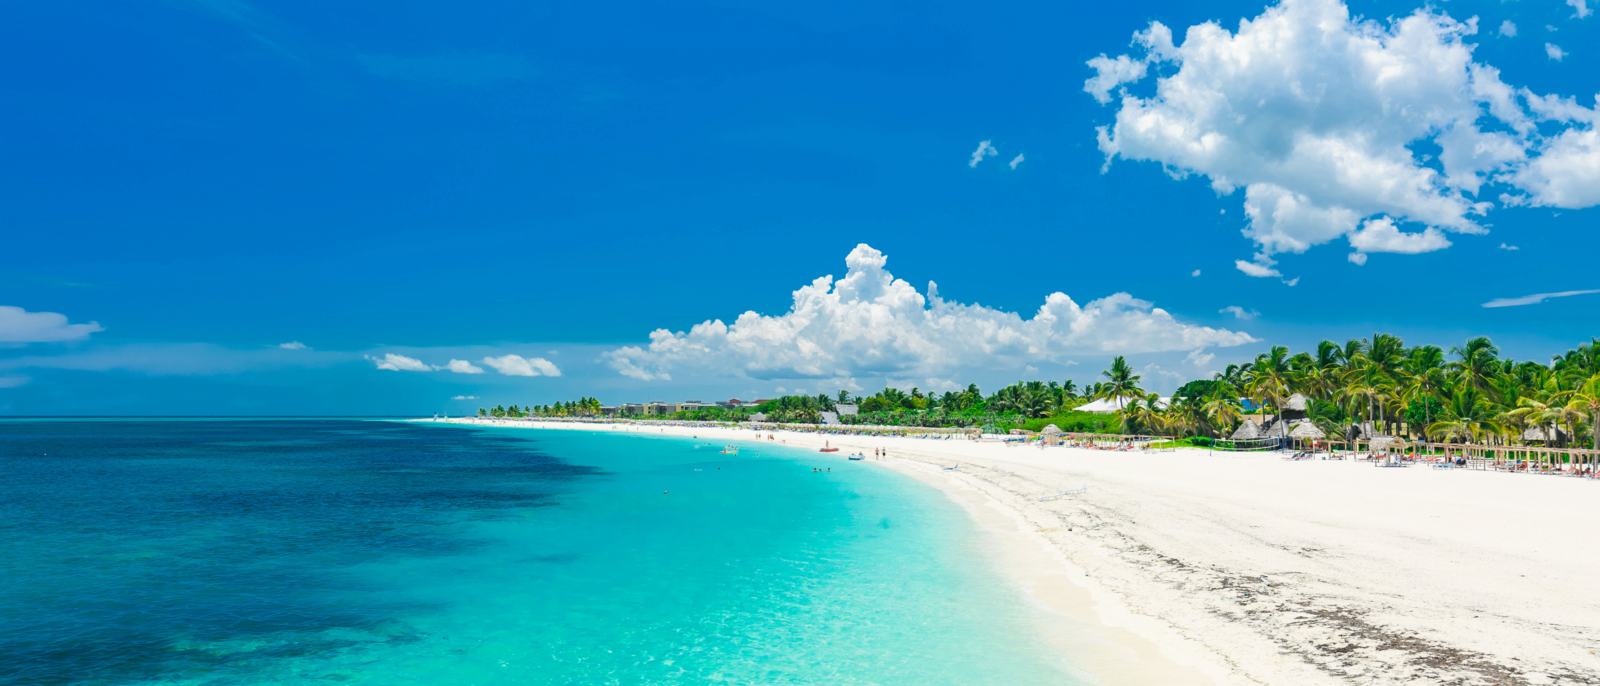 superbe vue imprenable sur une plage de sable blanc tropical et un océan turquoise et tranquille sur l'île de Cayo Coco, à Cuba, le jour d'été